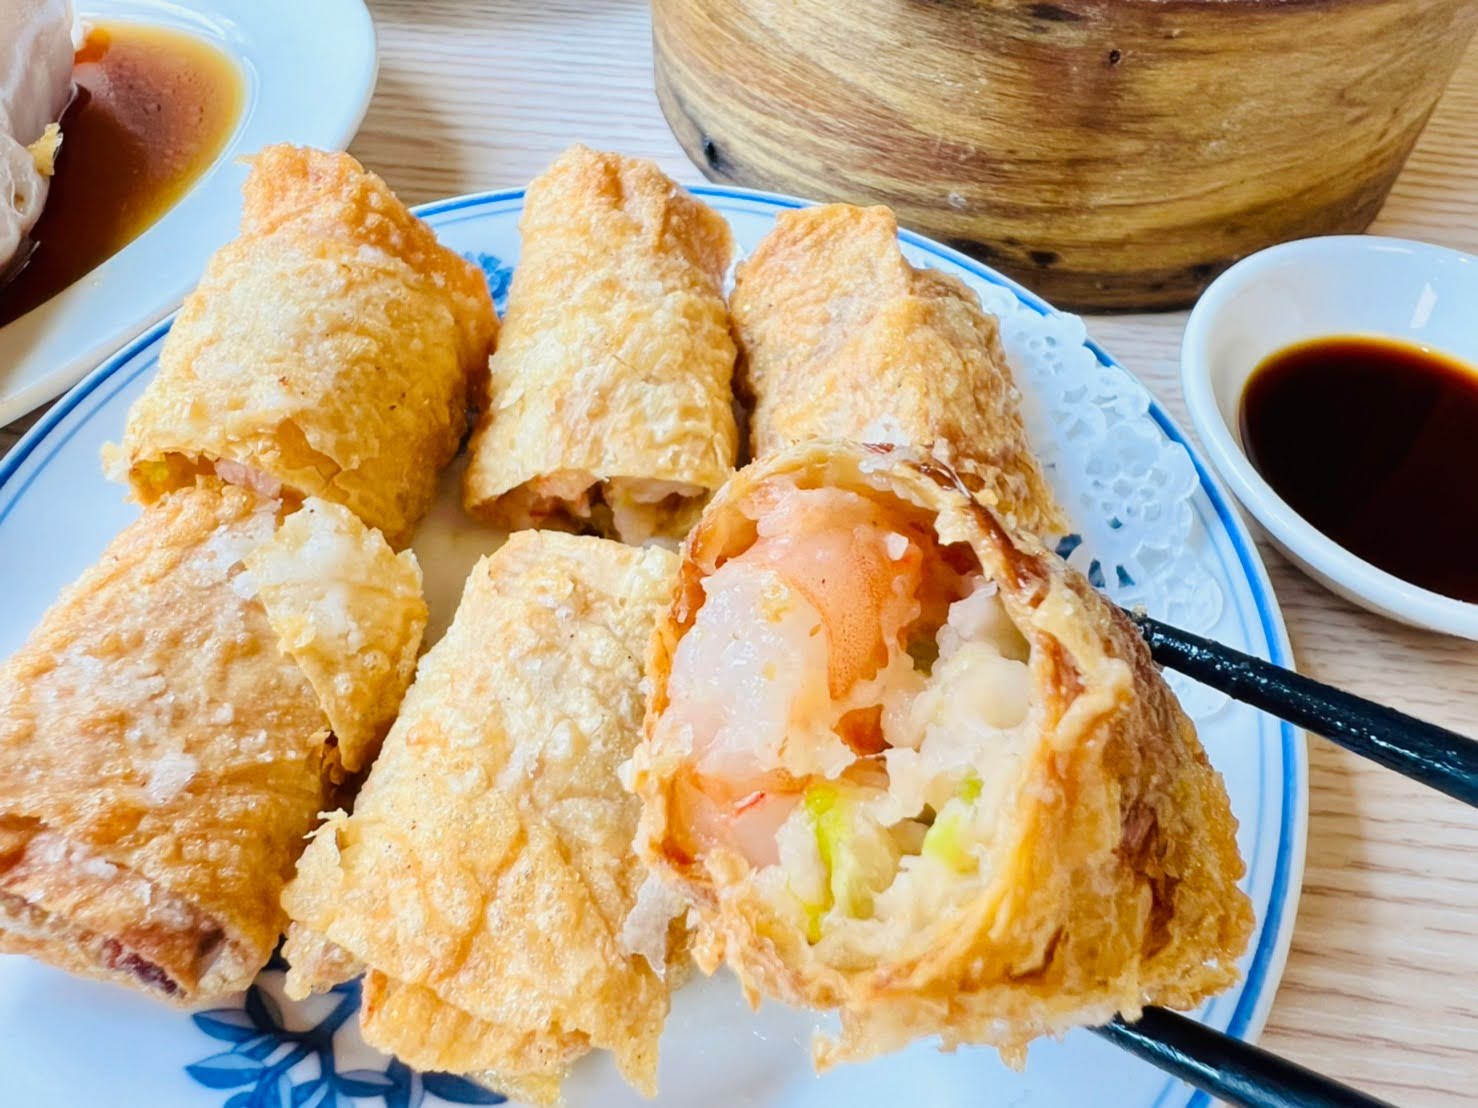 新竹美食推薦 平價小吃 港式飲茶 茶餐廳 ㄚ水哥港式點心坊